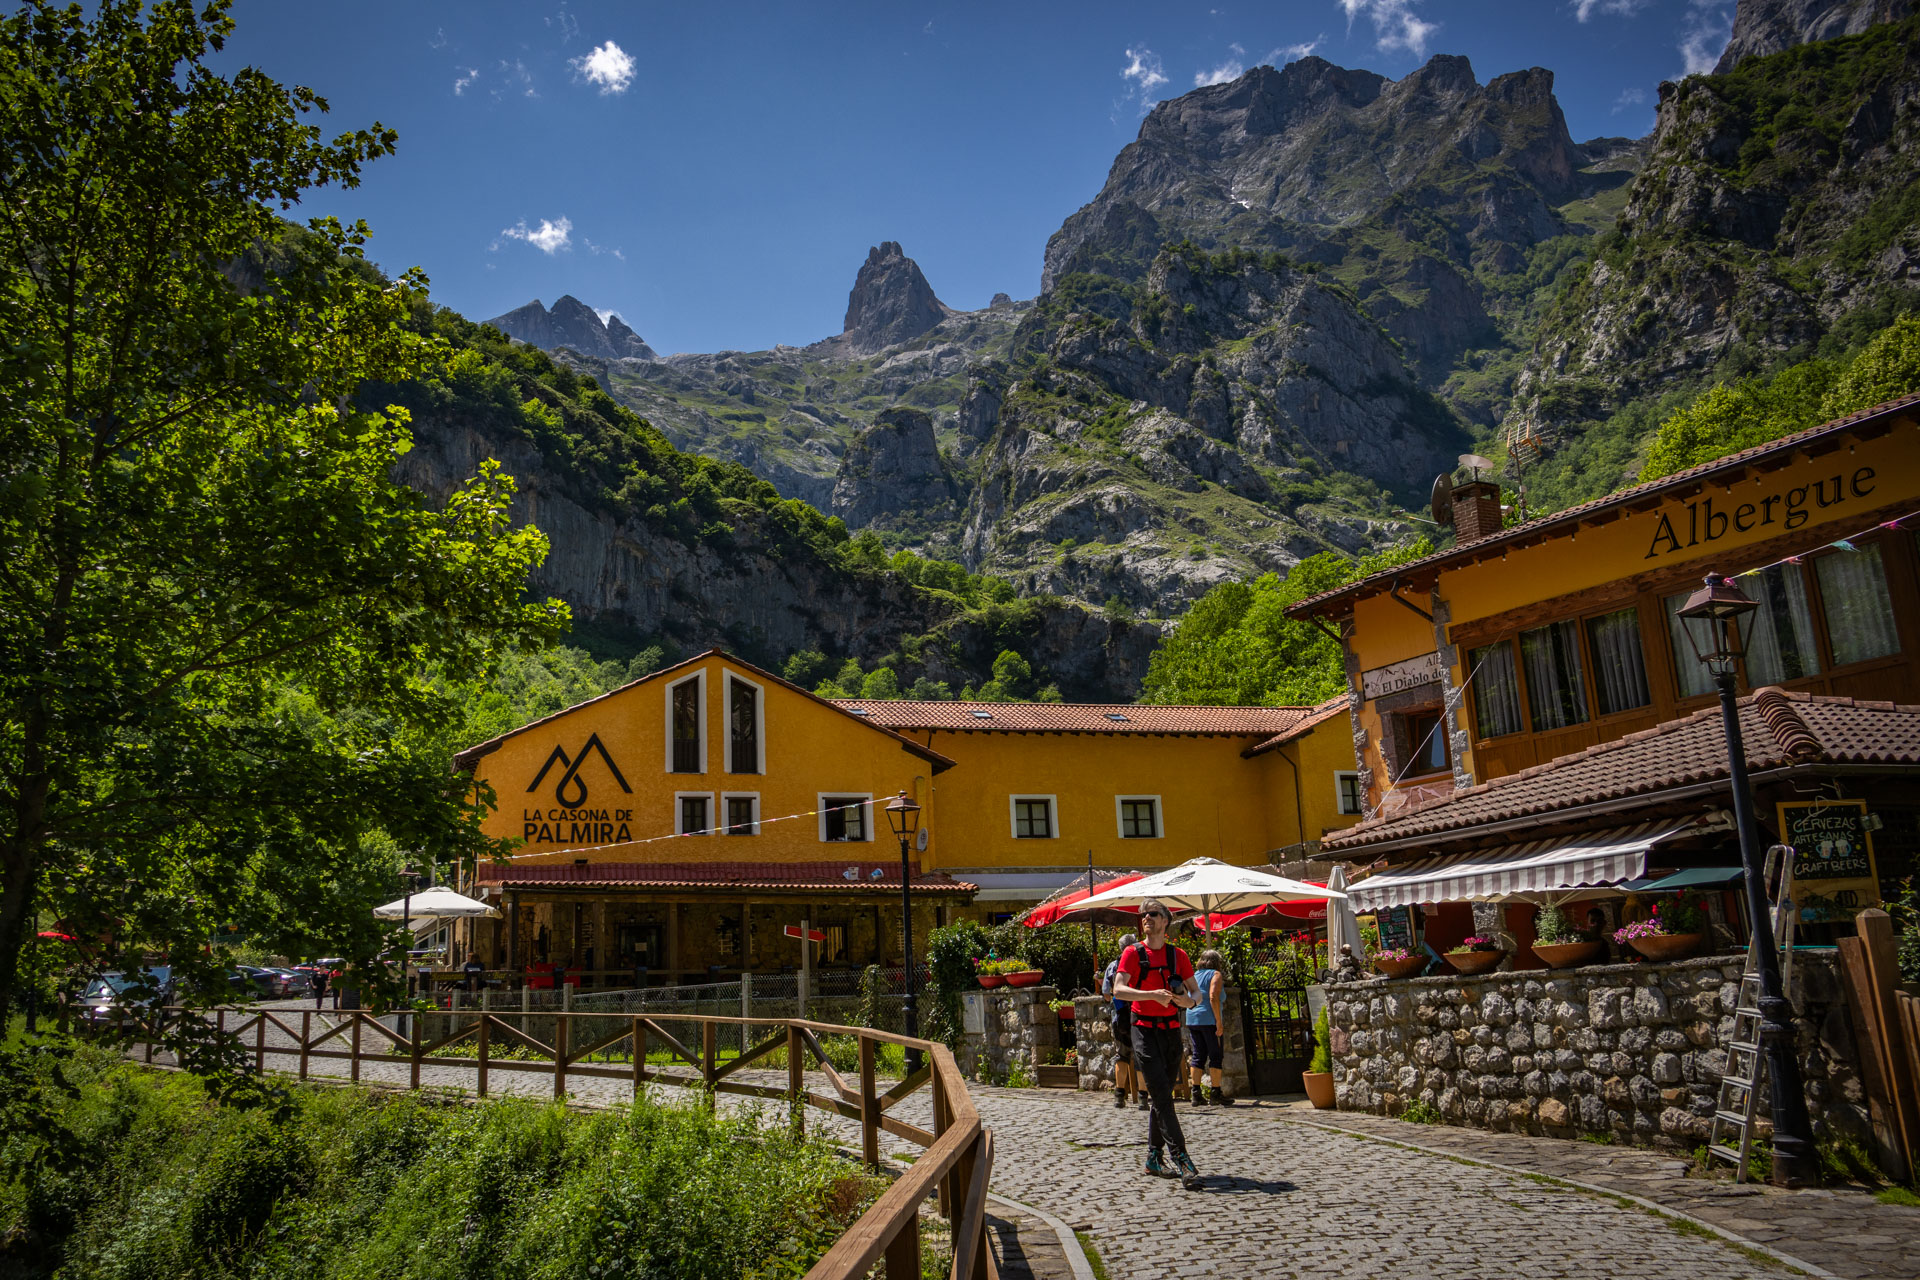 Pauzeren van de wandeling Ruta del Cares in Picos de Europa in Spanje, je ziet een geel restaurant waar Hugo voor loopt over een pad met bergen en groen tegen een blauwe lucht.